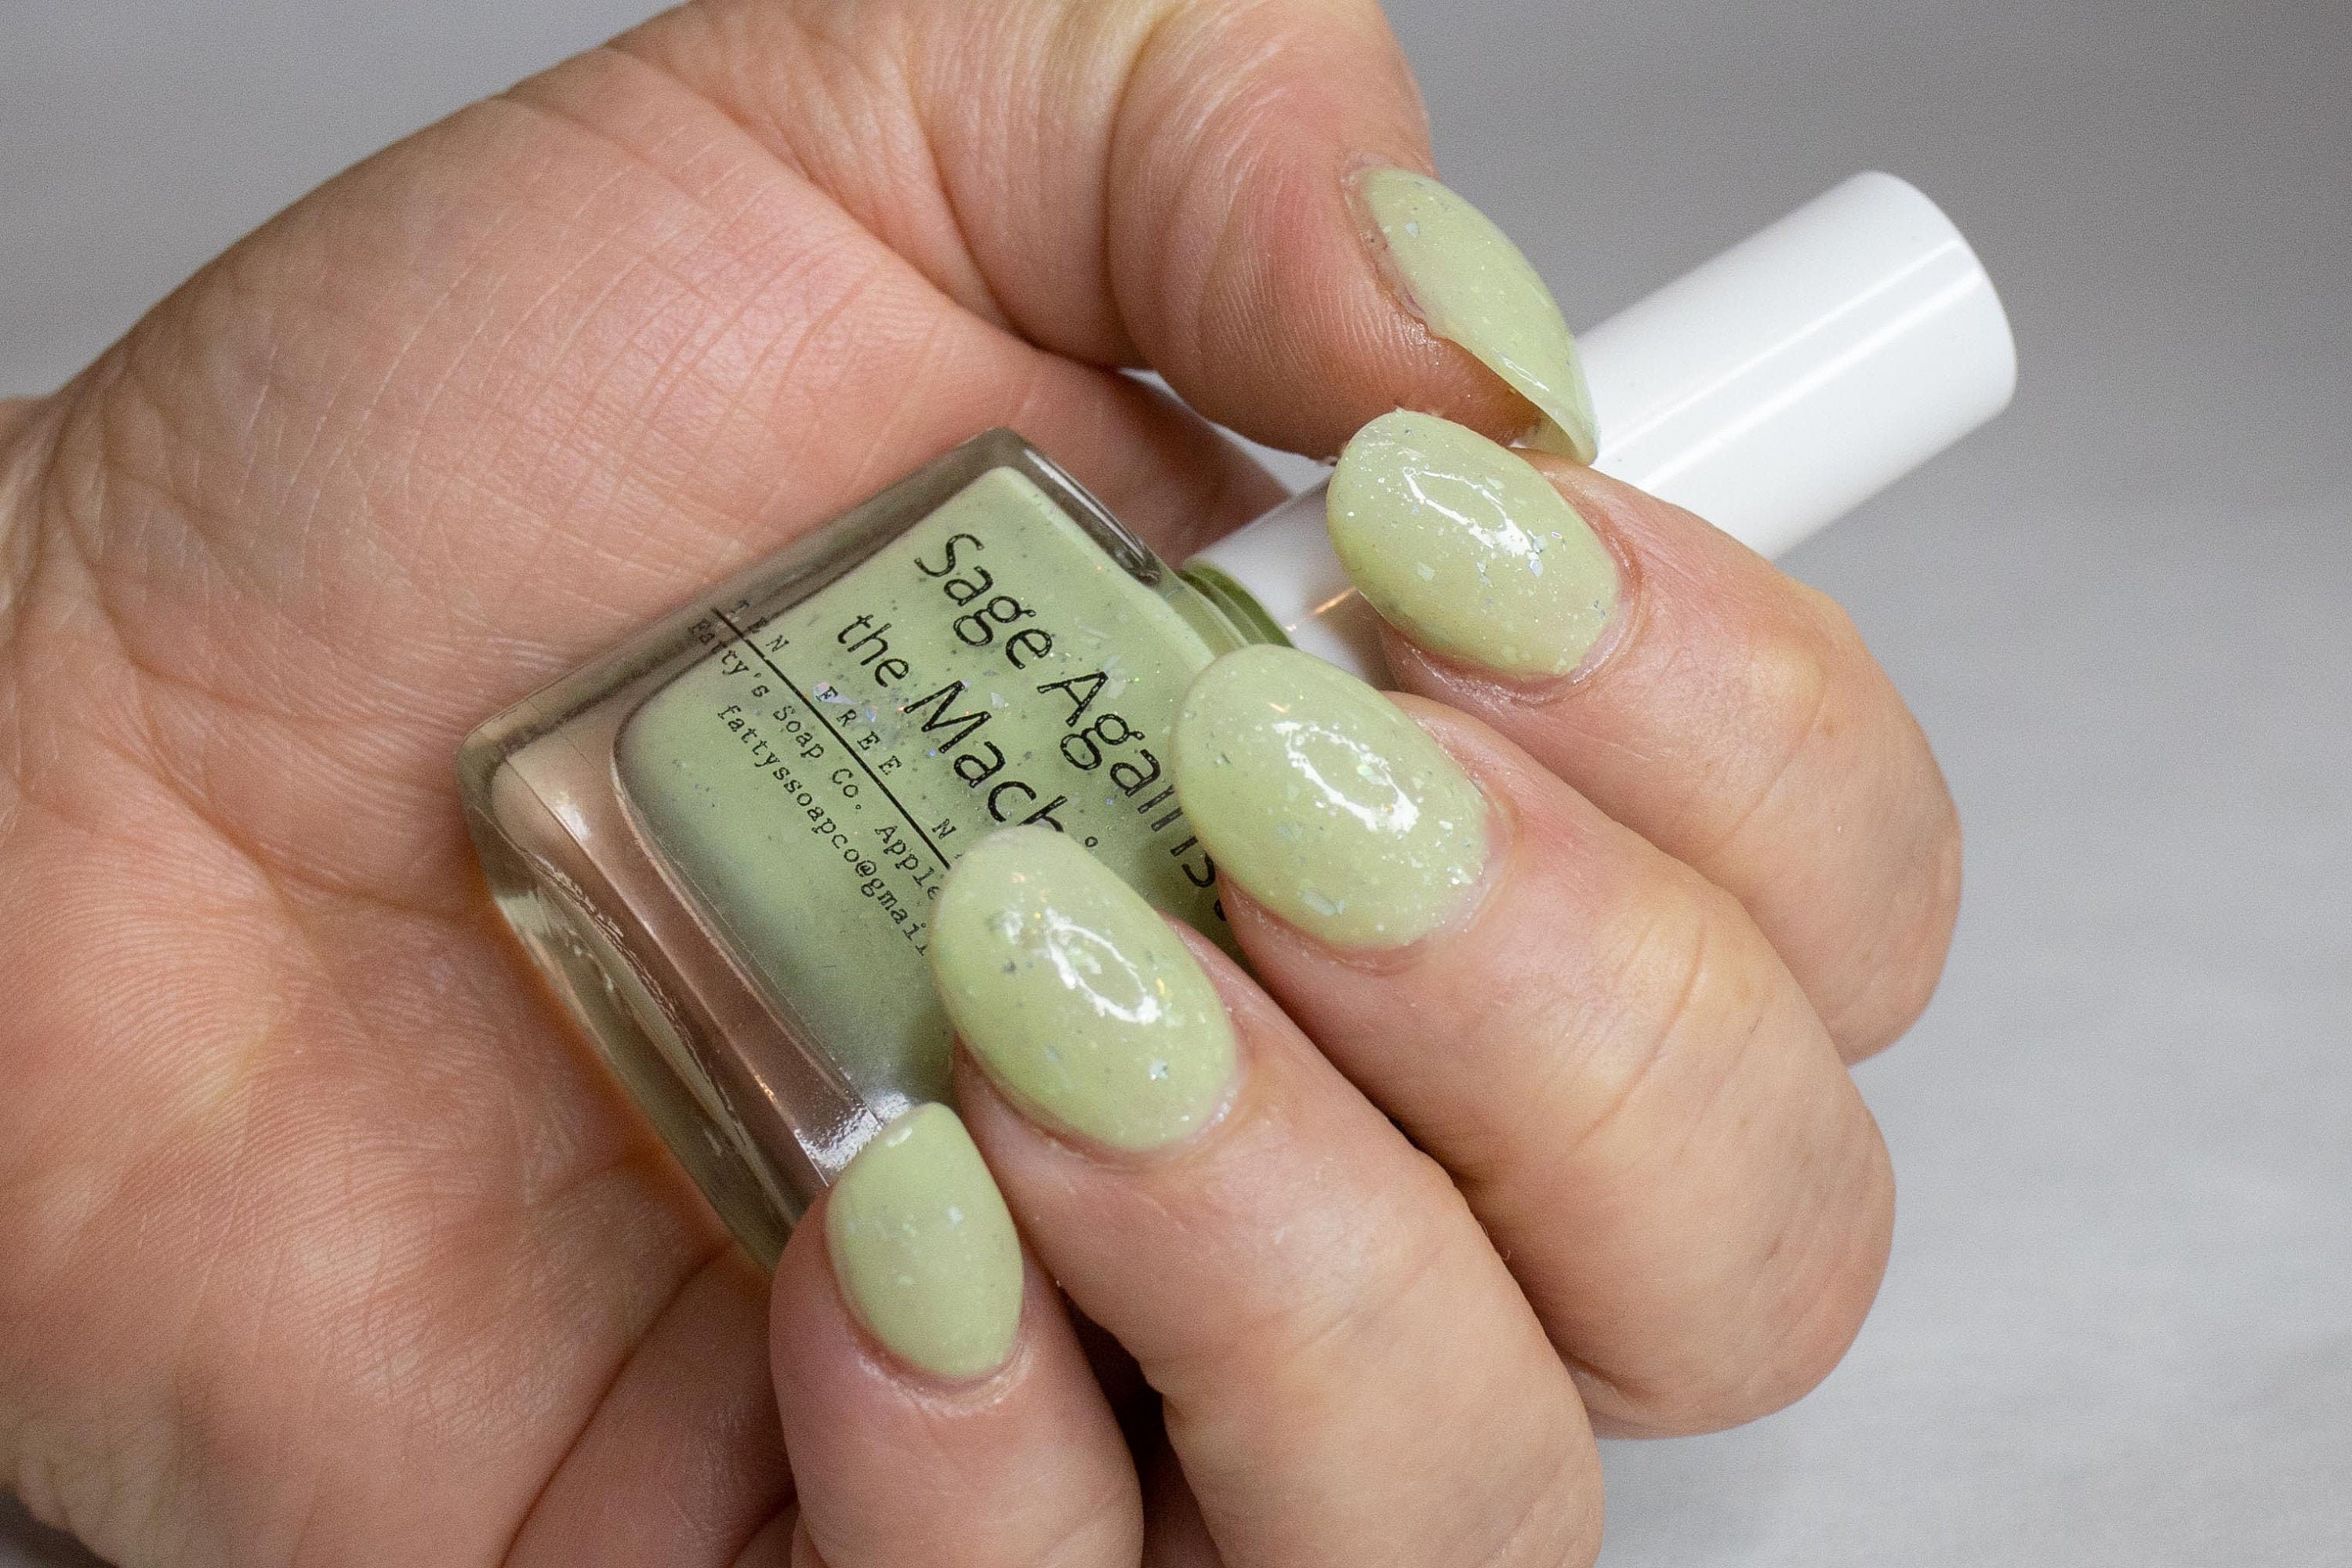 sage nails | Nail polish, Nail color trends, Green nails